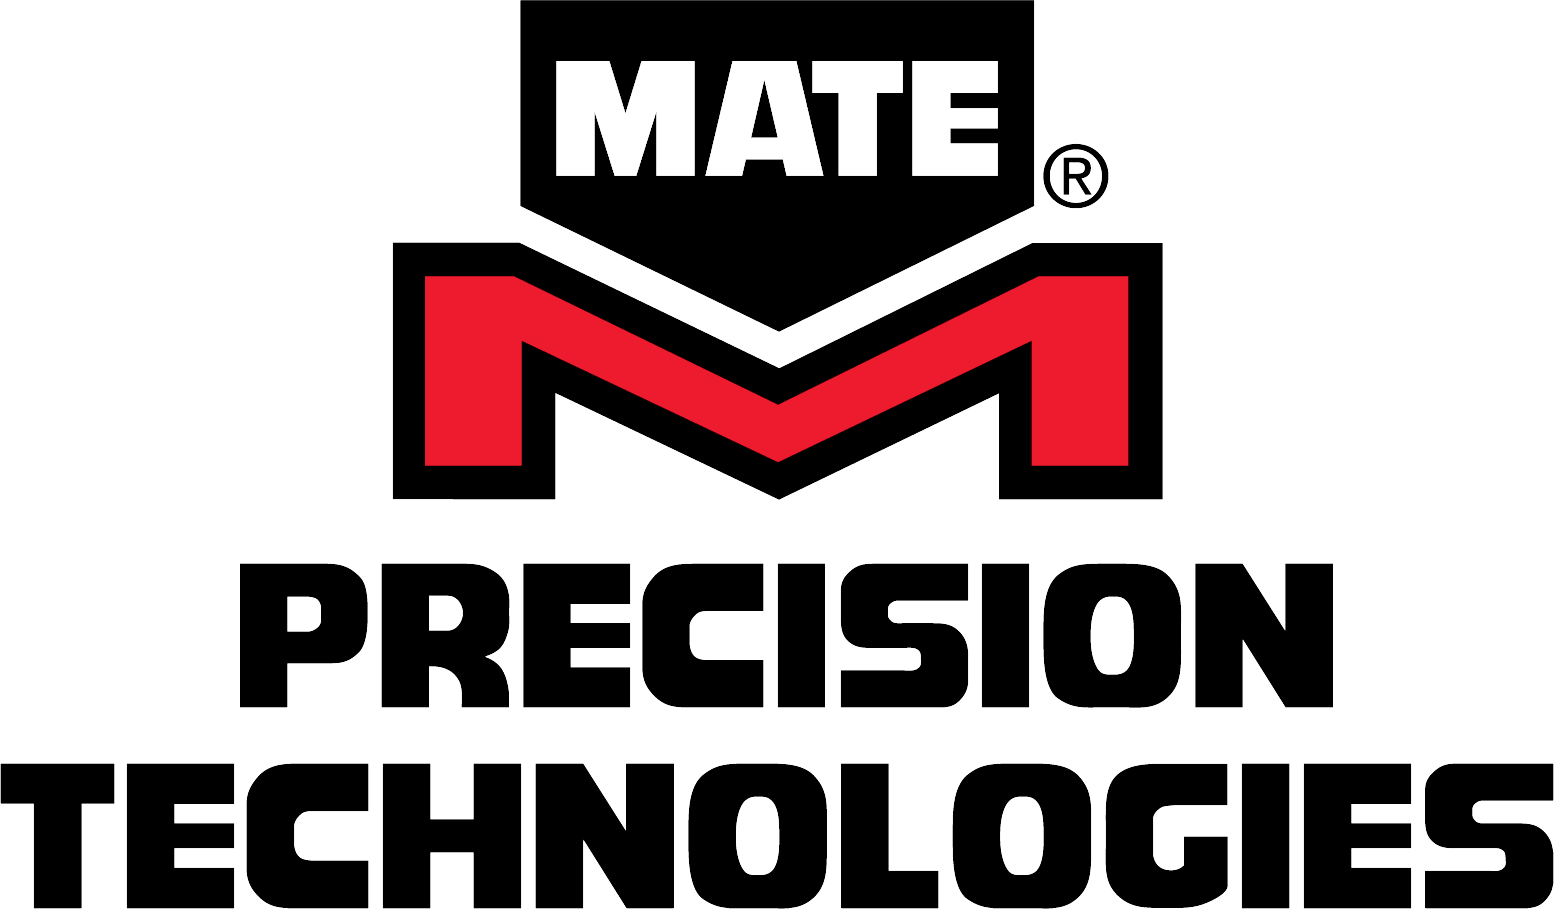 Mate Precision Technologies